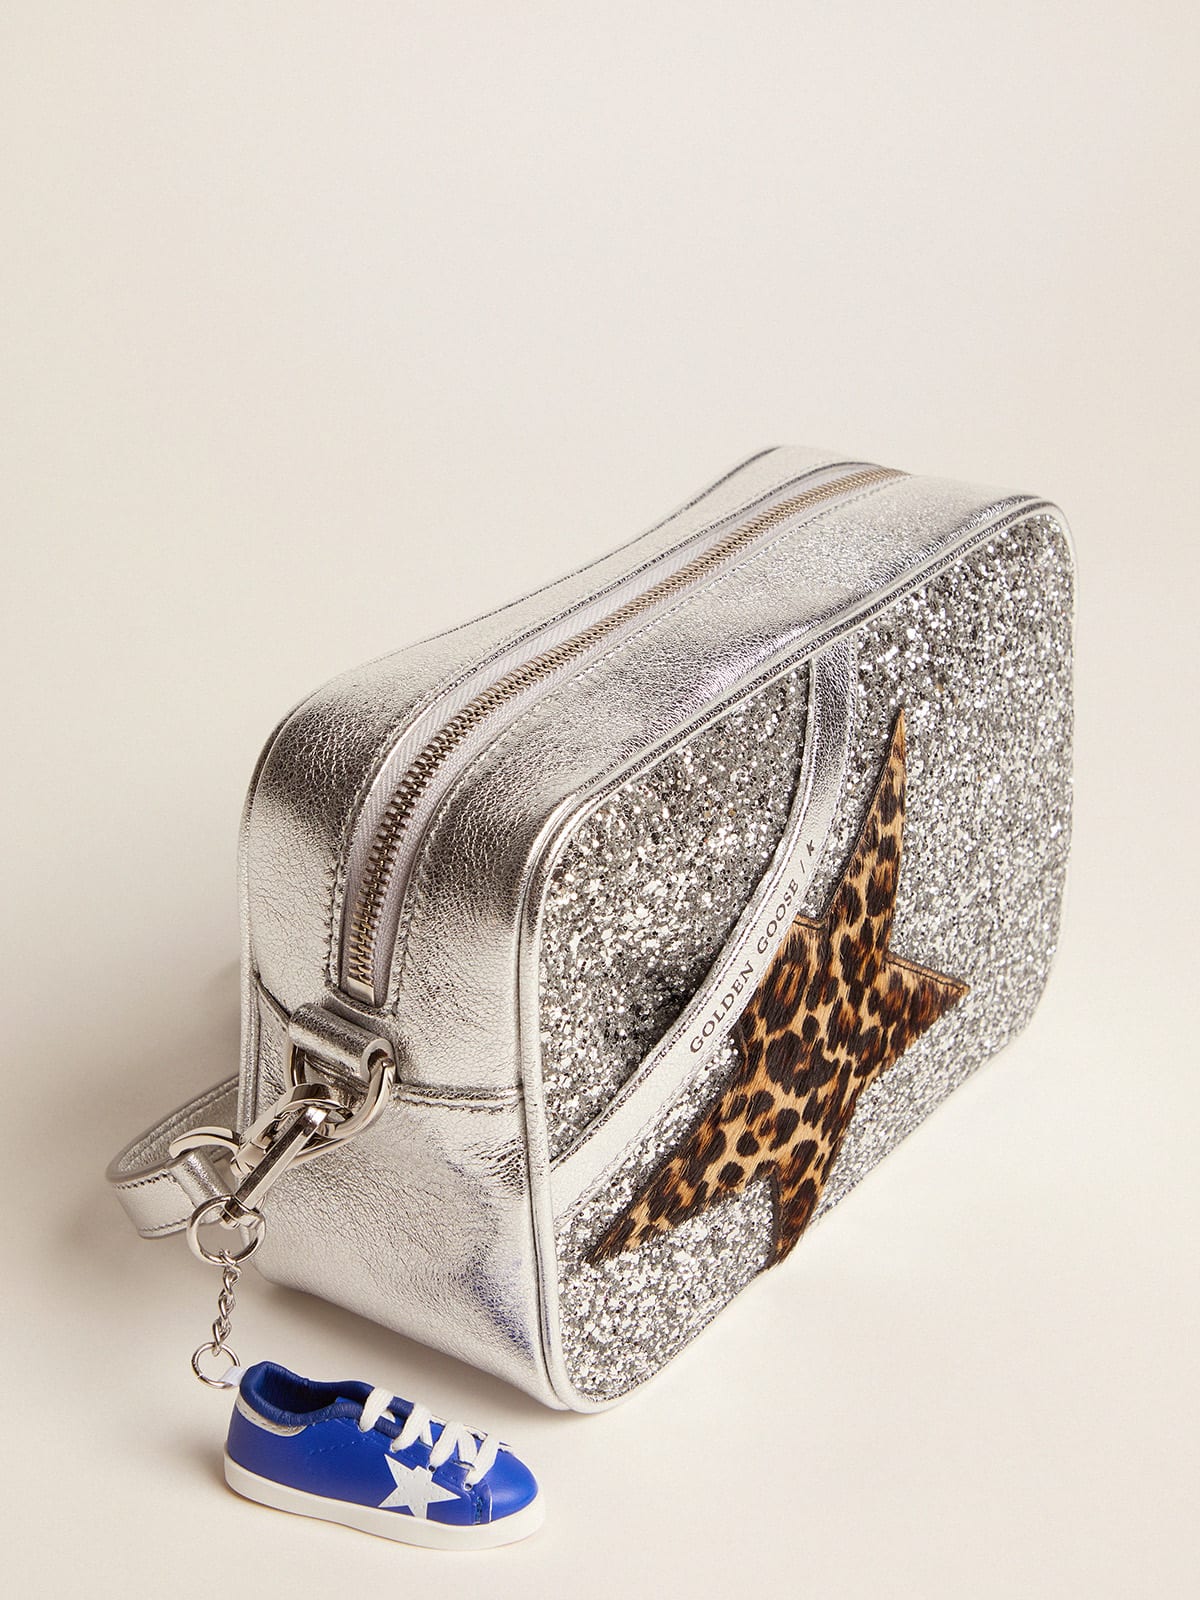 Golden Goose - Tasche Star Bag aus Metallic-Leder mit silberfarbenem Glitzer und Stern aus Cavallino-Leder mit Leo-Print in 